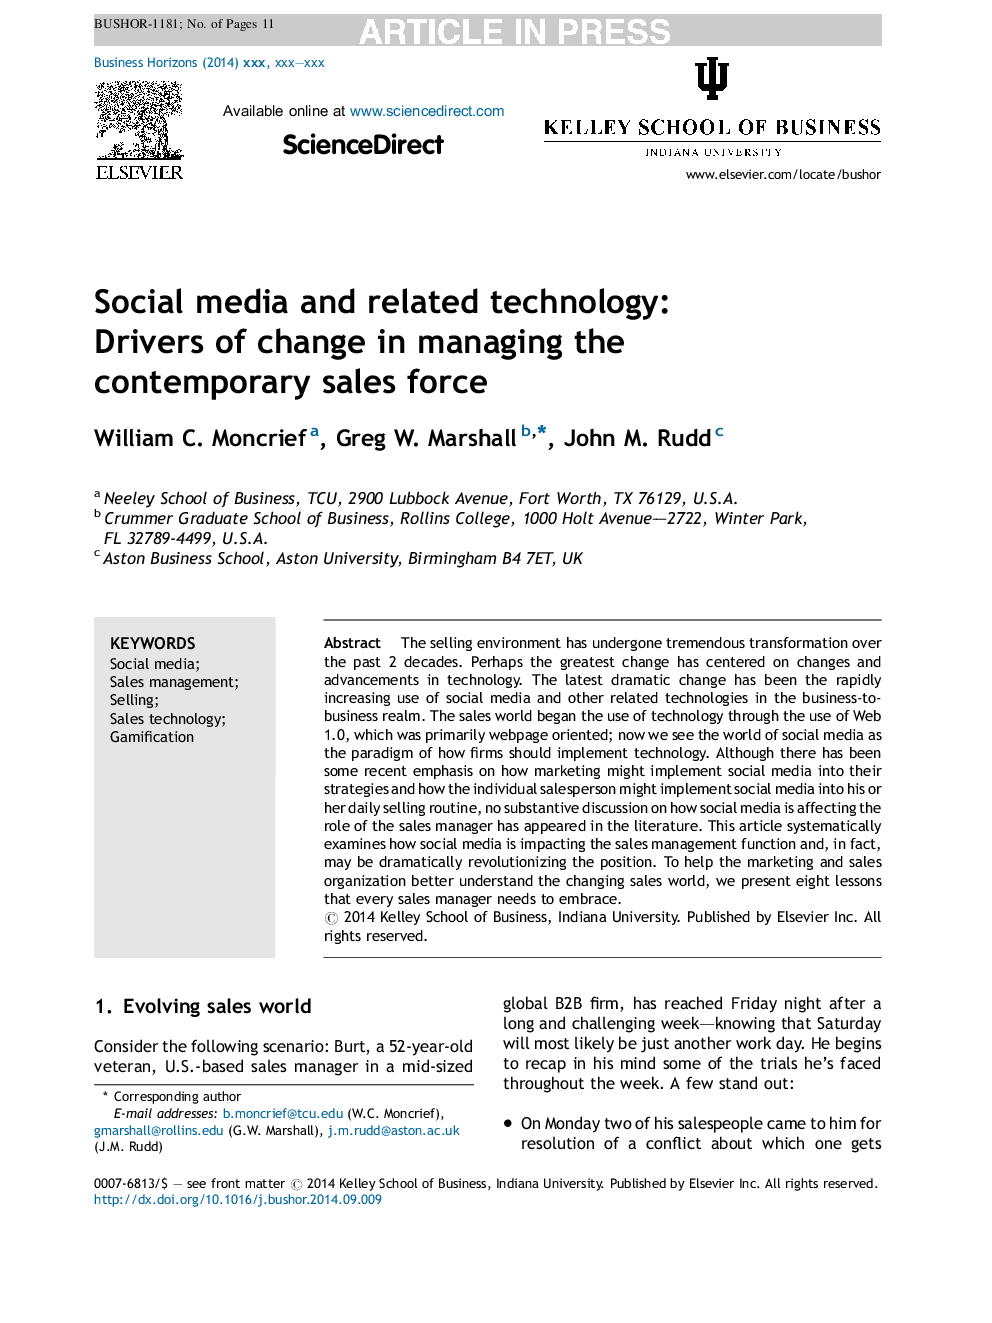 رسانه های اجتماعی و فن آوری های مرتبط: رانندگان تغییر در مدیریت نیروی فروش معاصر 